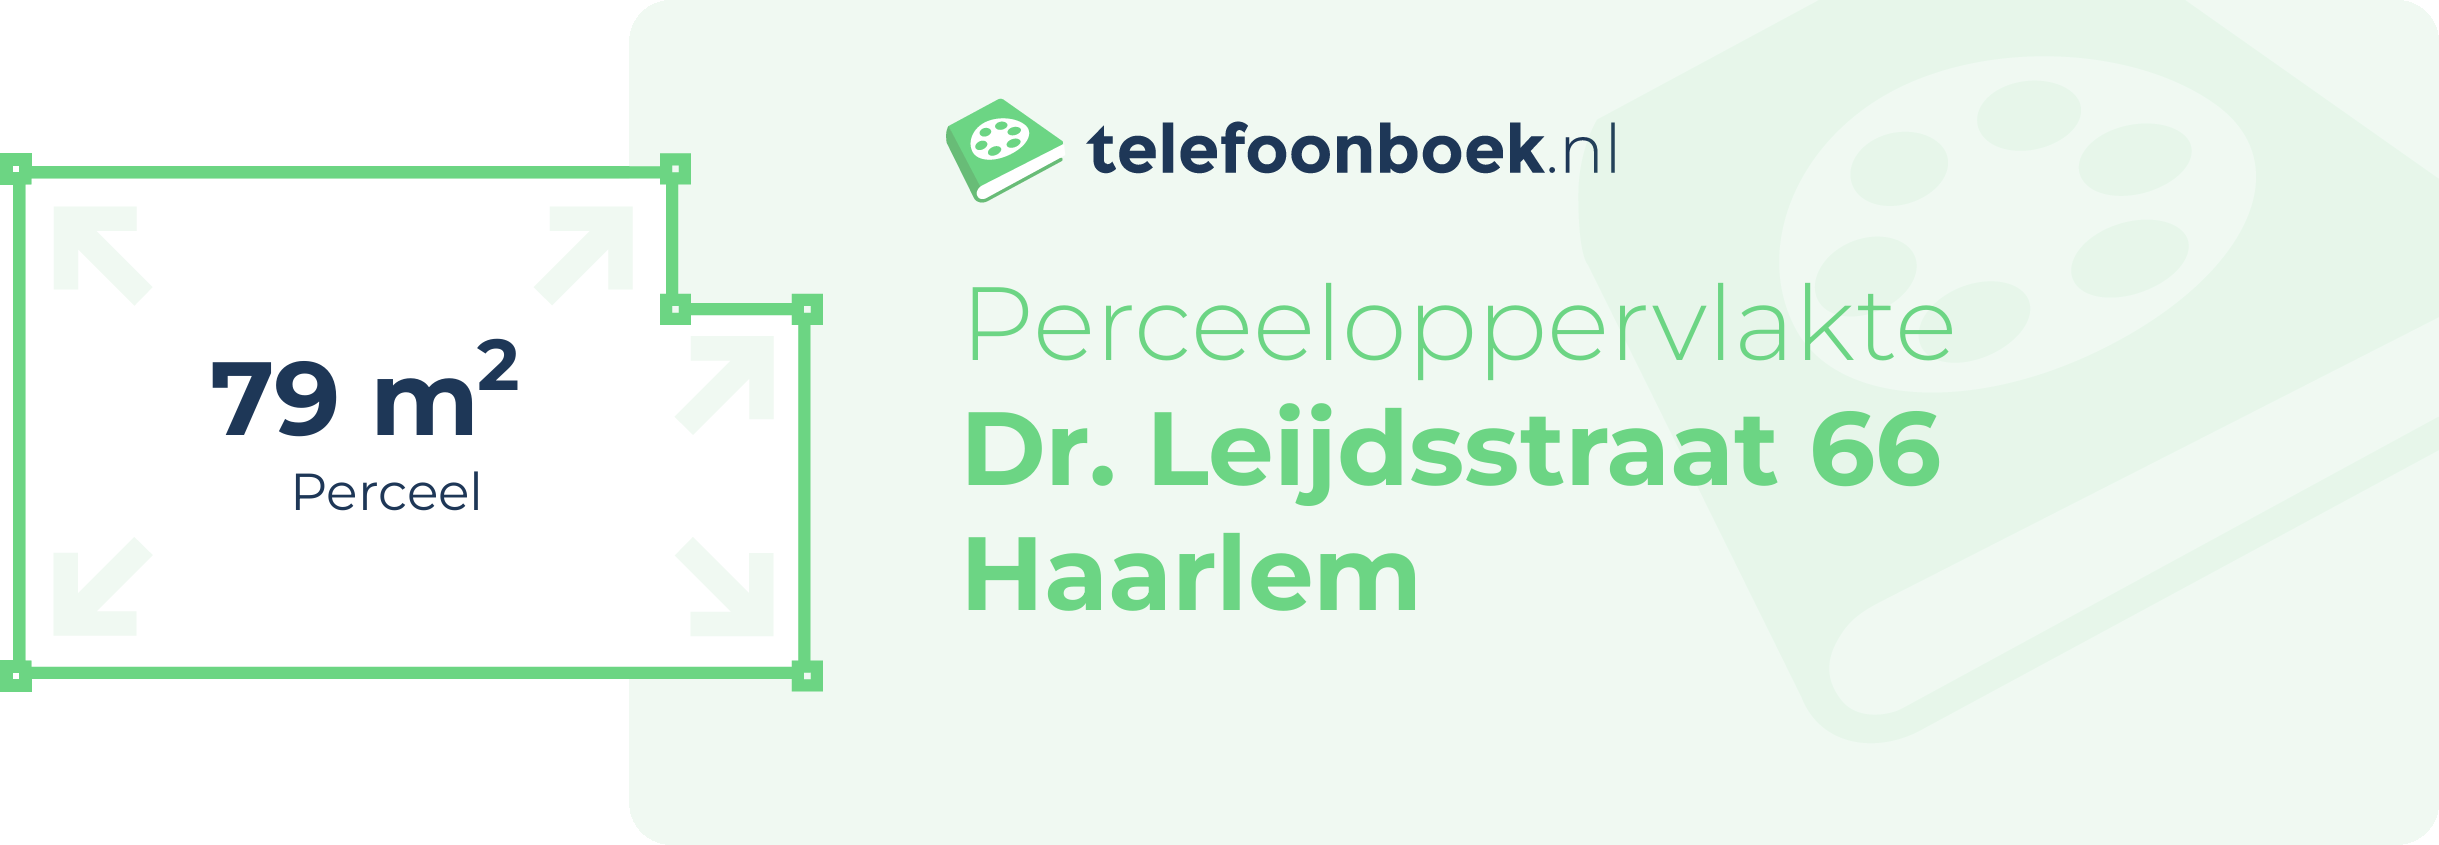 Perceeloppervlakte Dr. Leijdsstraat 66 Haarlem